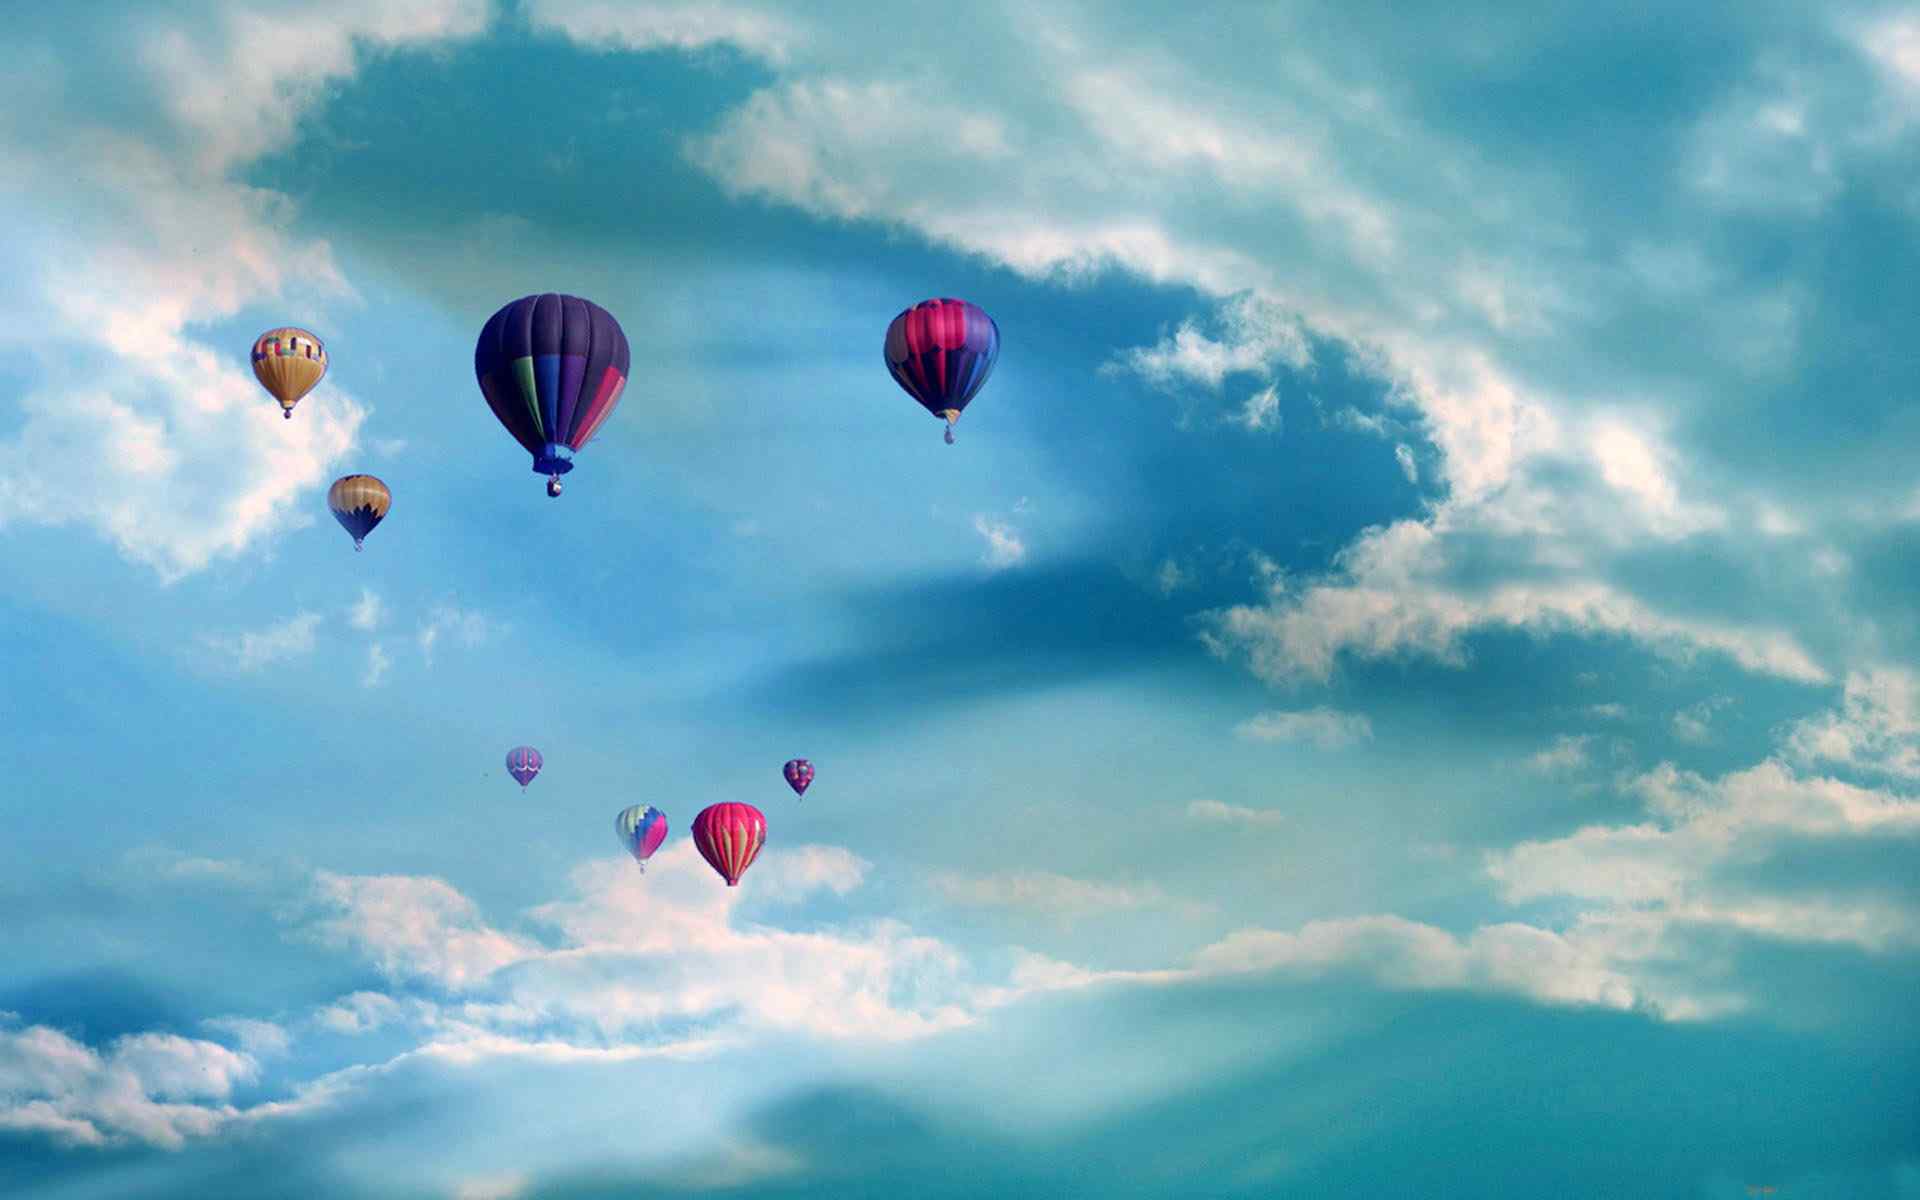 超好看唯美的热气球翱翔蓝天高清桌面壁纸